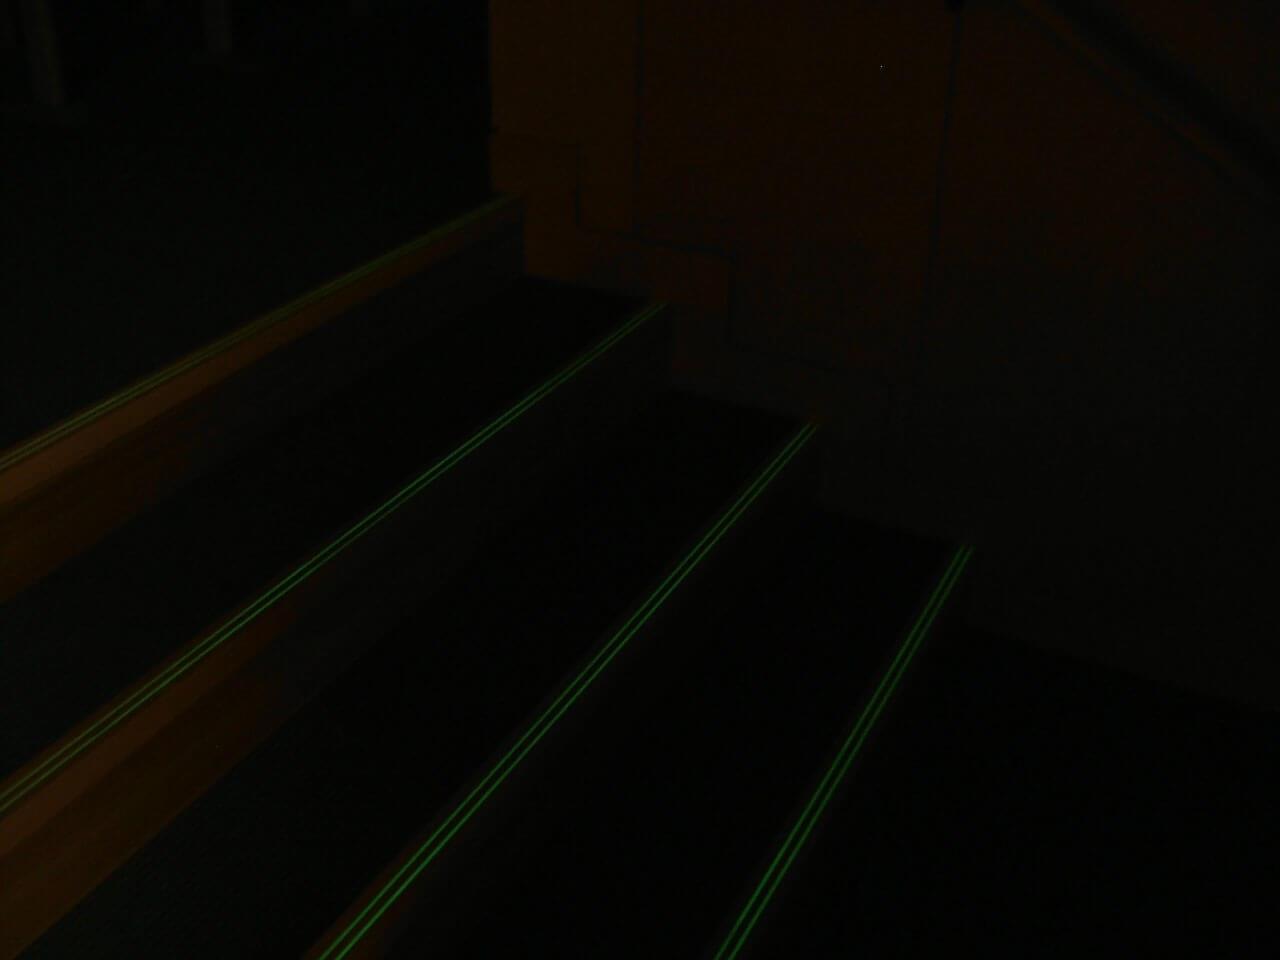 立教大学の講義室階段に設置された暗視下のアベイラス アルシオール ラインを斜めから見た様子